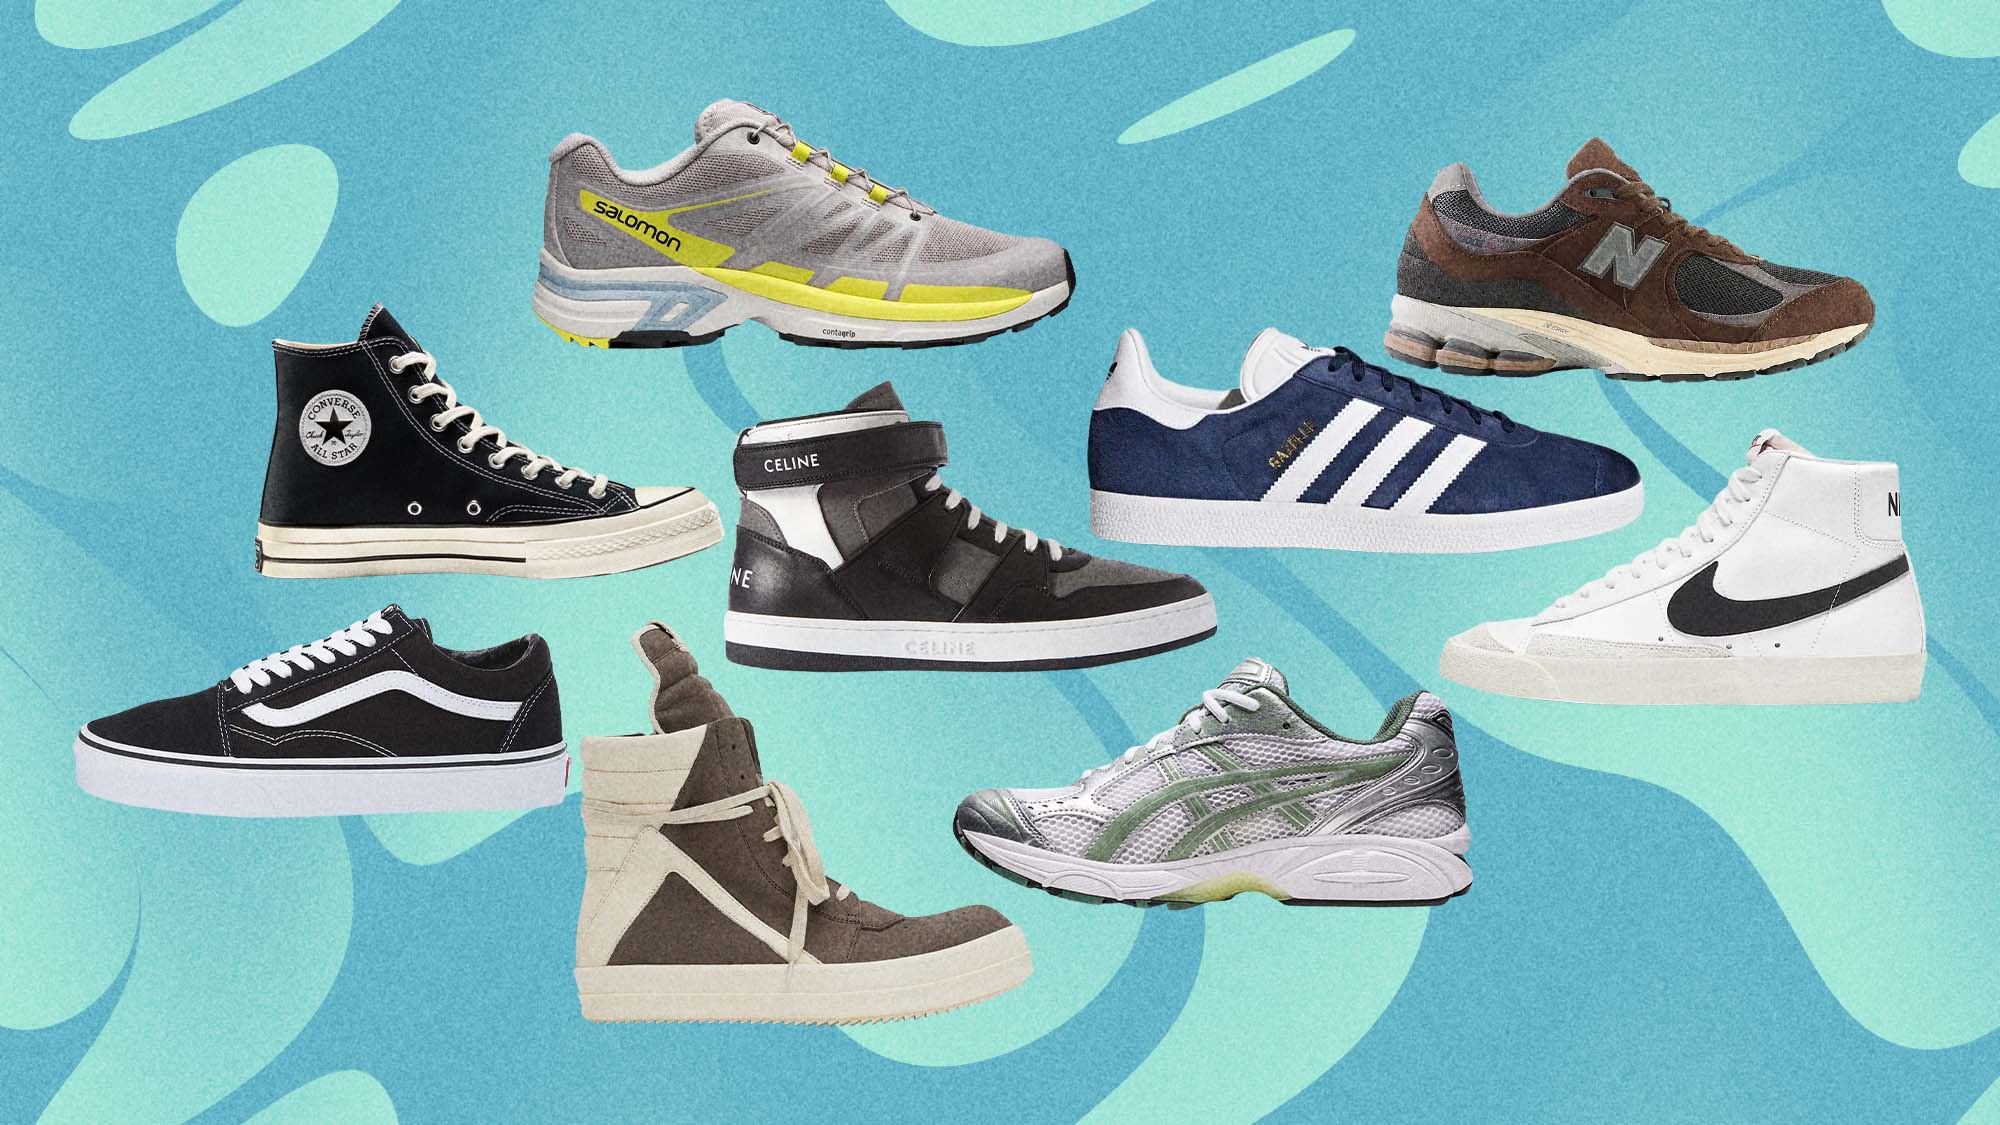 Top 10 Shoe Brands